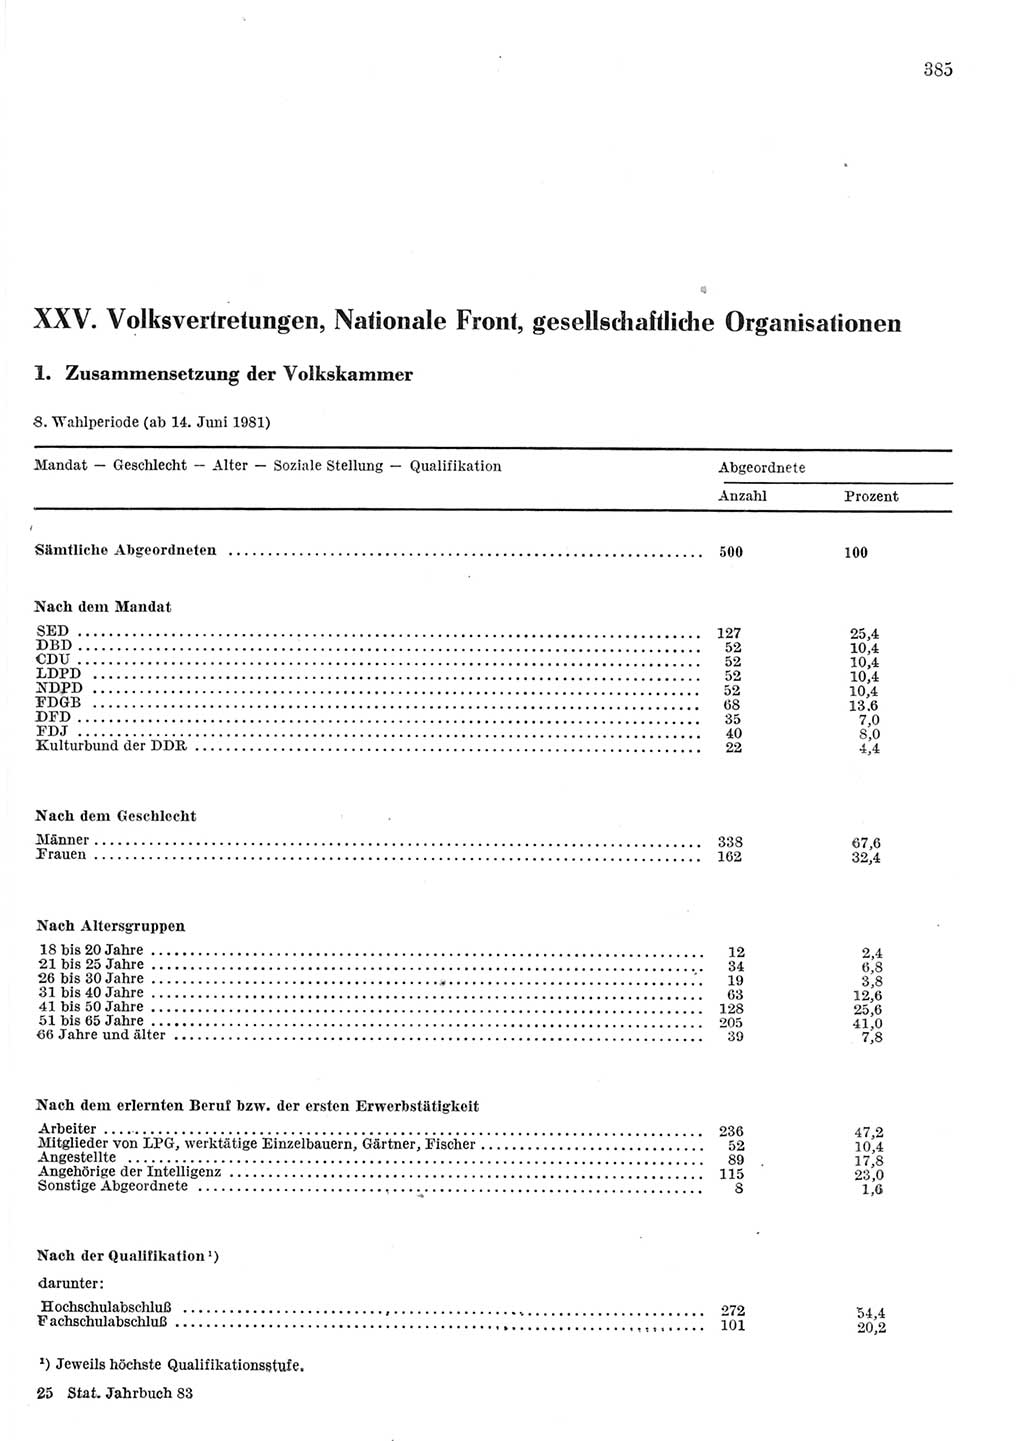 Statistisches Jahrbuch der Deutschen Demokratischen Republik (DDR) 1983, Seite 385 (Stat. Jb. DDR 1983, S. 385)